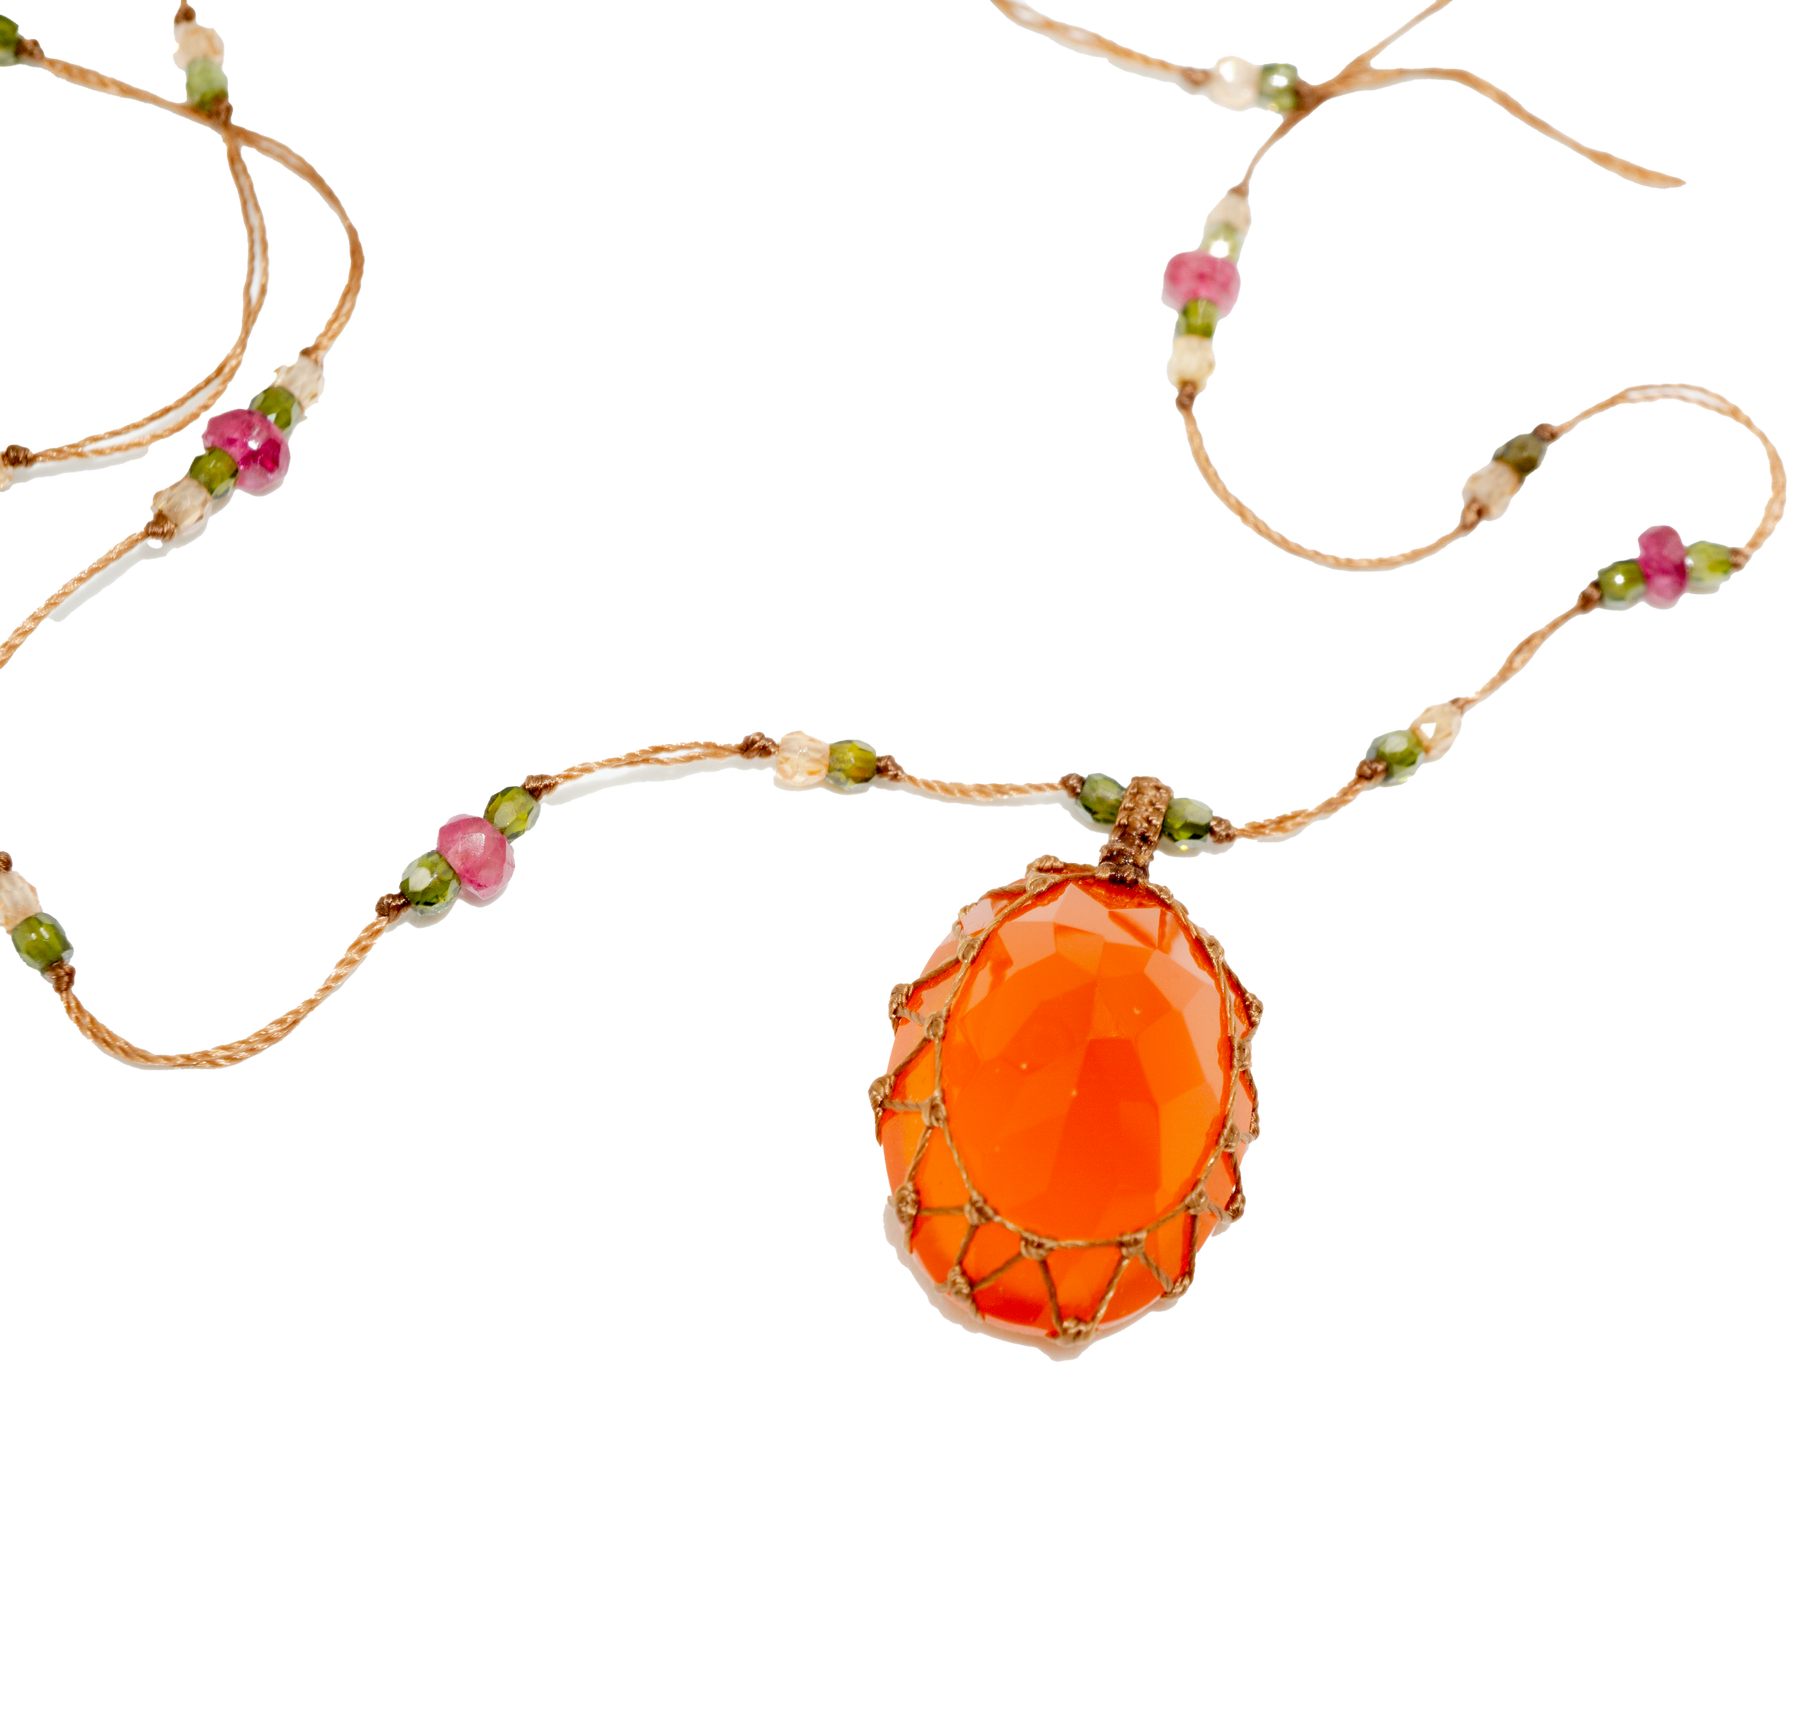 Short Tibetan Necklace - Orange Onyx - Mix Pink Tourmaline - Tobacco Thread